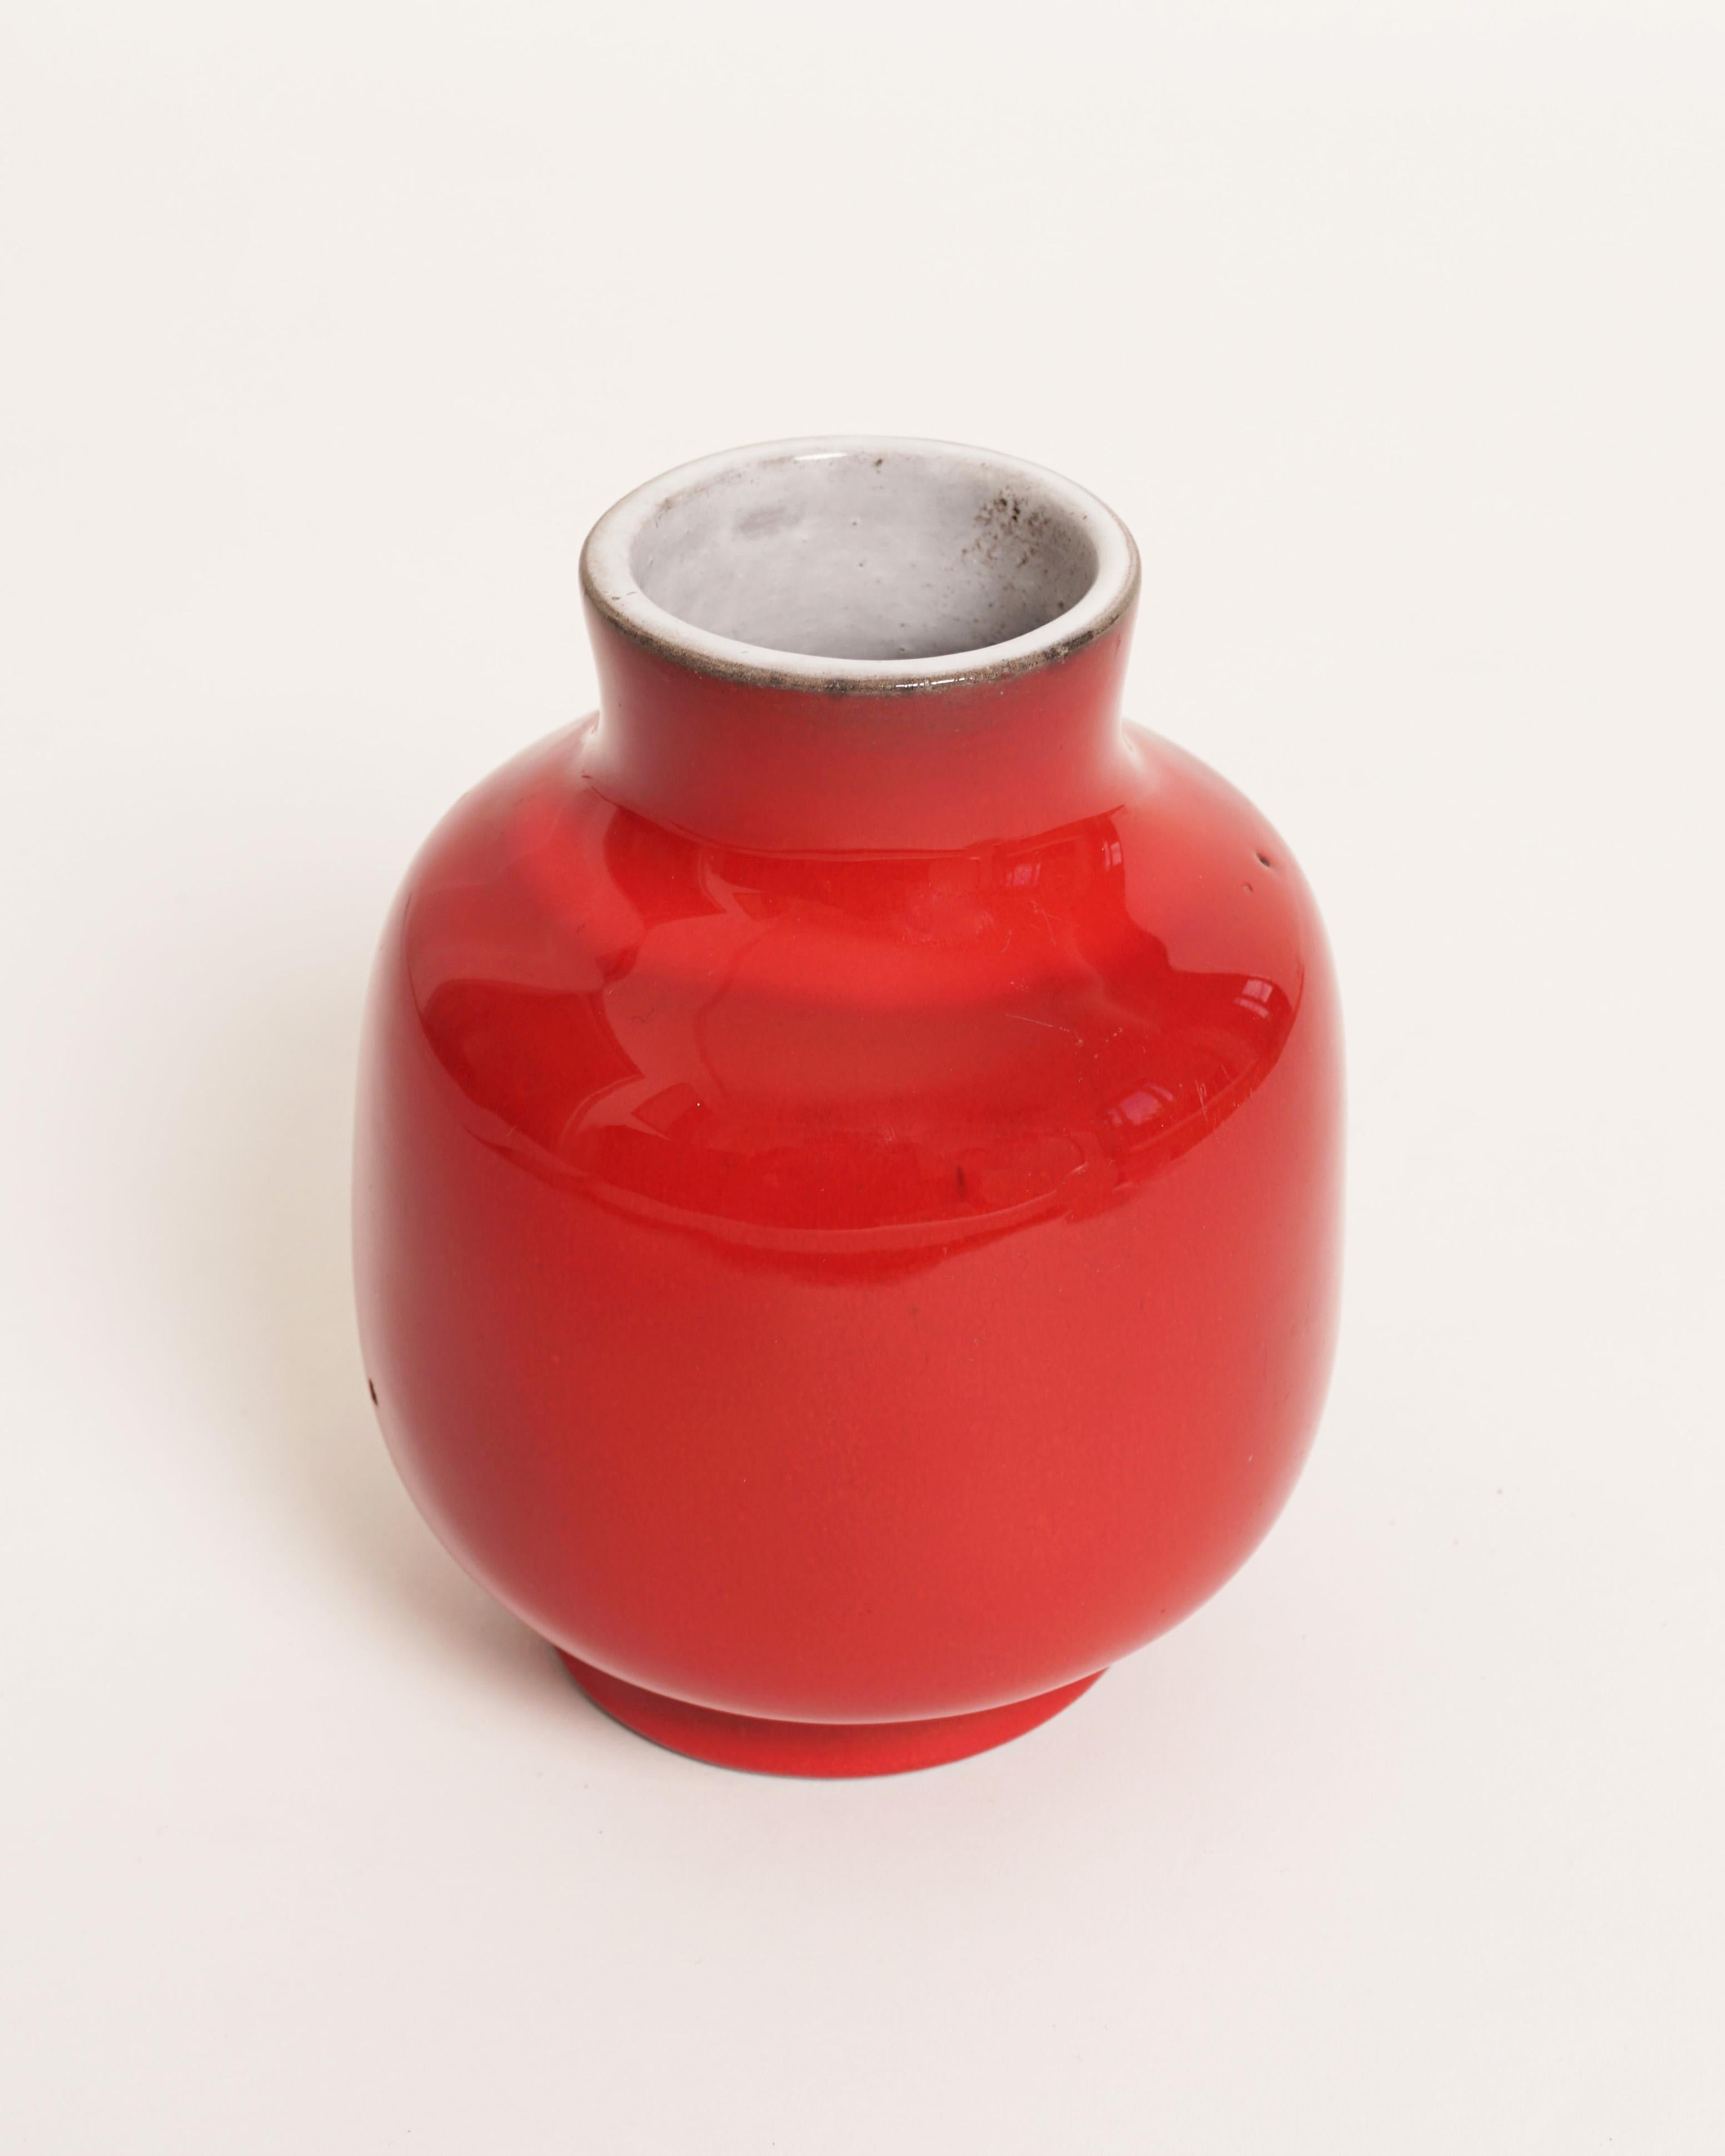 Jacques et Dani Ruelland
Vase japonais, c.C. 1970
Exécution : Céramique, rouge
Signé : Ruelland
H : 15,5 cm (5.9